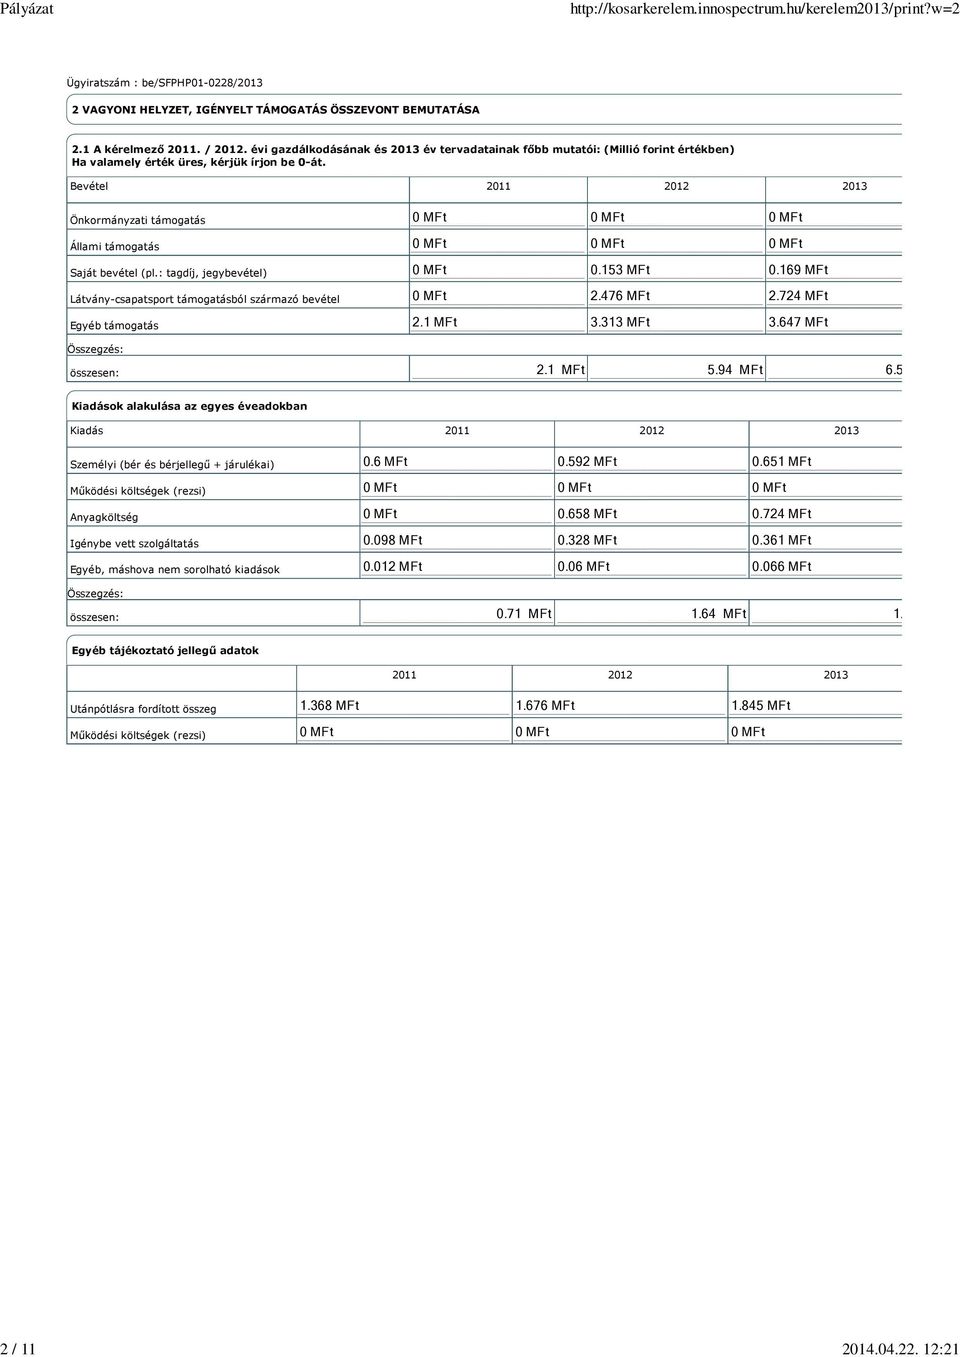 Bevétel 2011 2012 2013 Önkormányzati támogatás Állami támogatás Saját bevétel (pl.